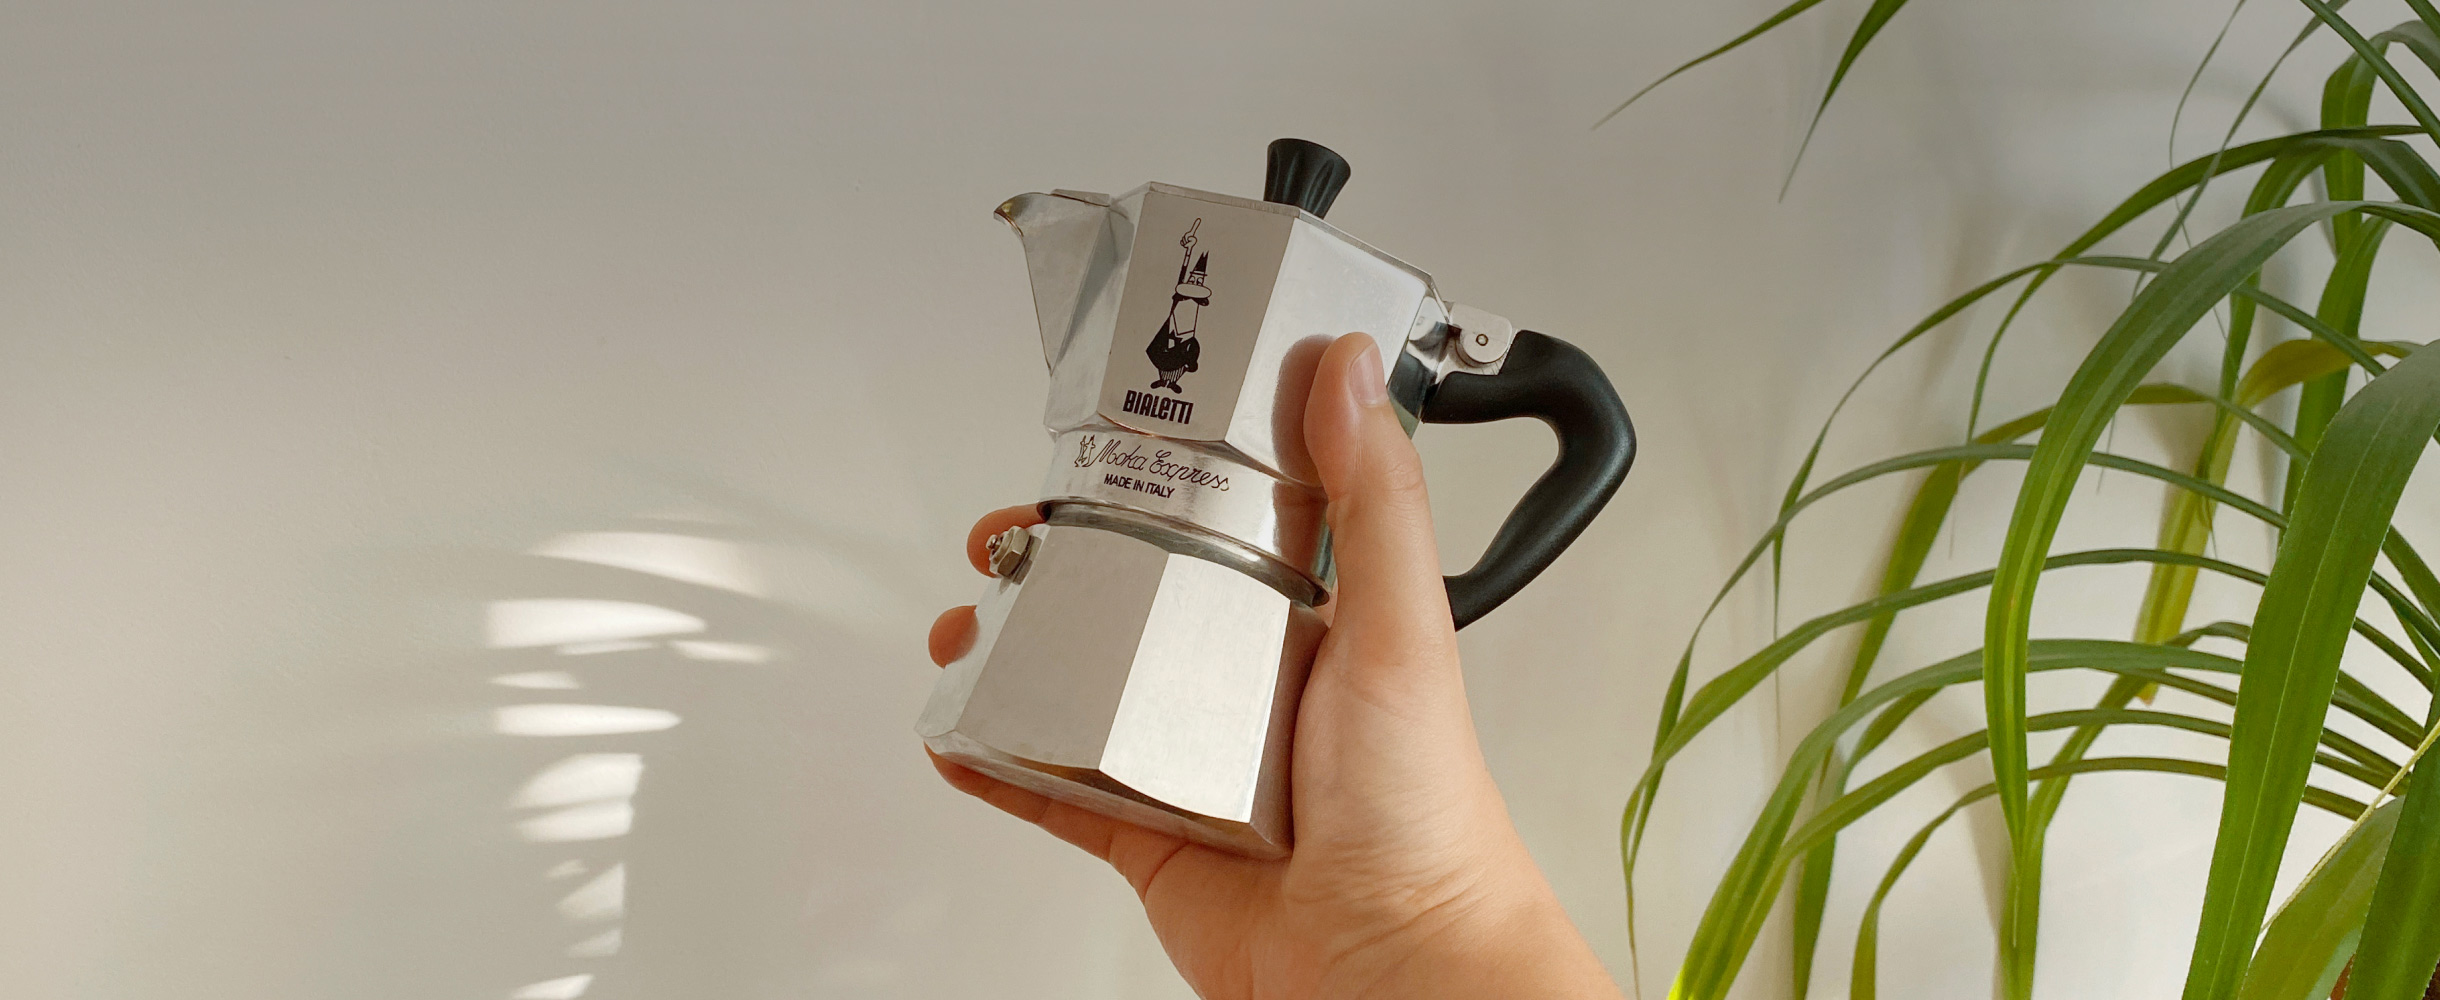 Надо брать: 4 самых бюджетных устройства для приготовления кофе